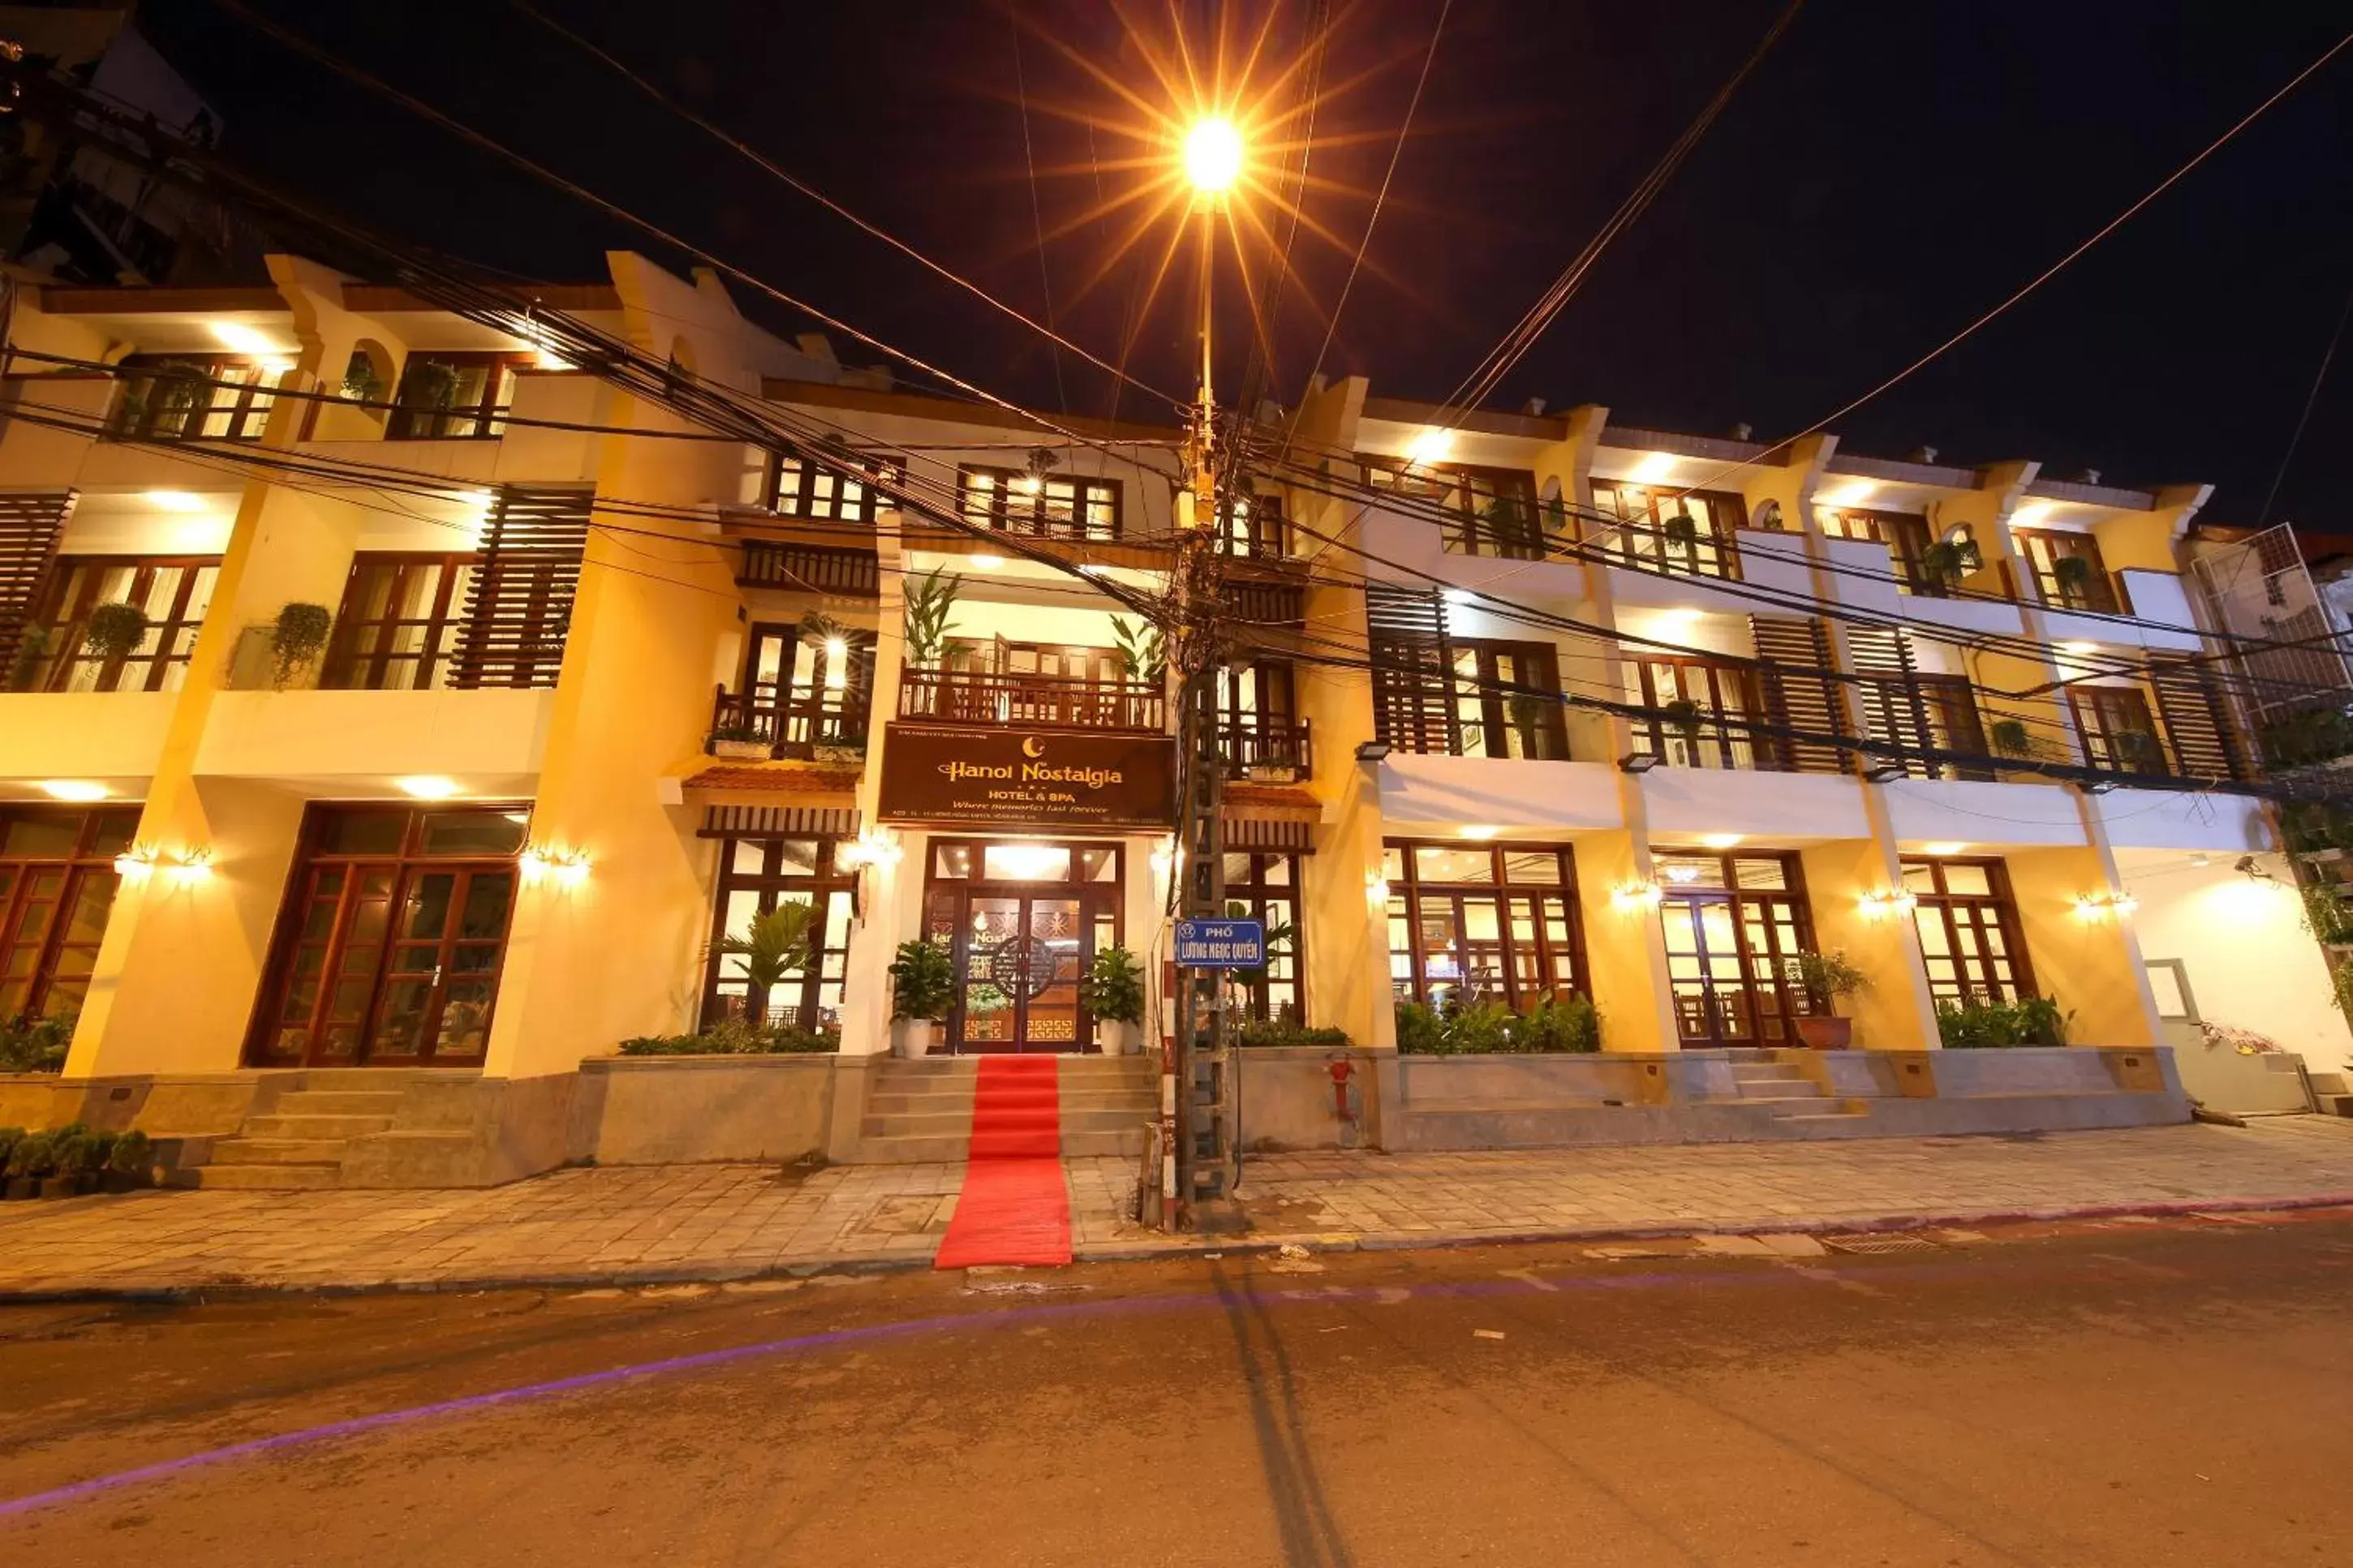 Property Building in Hanoi Nostalgia Hotel & Spa